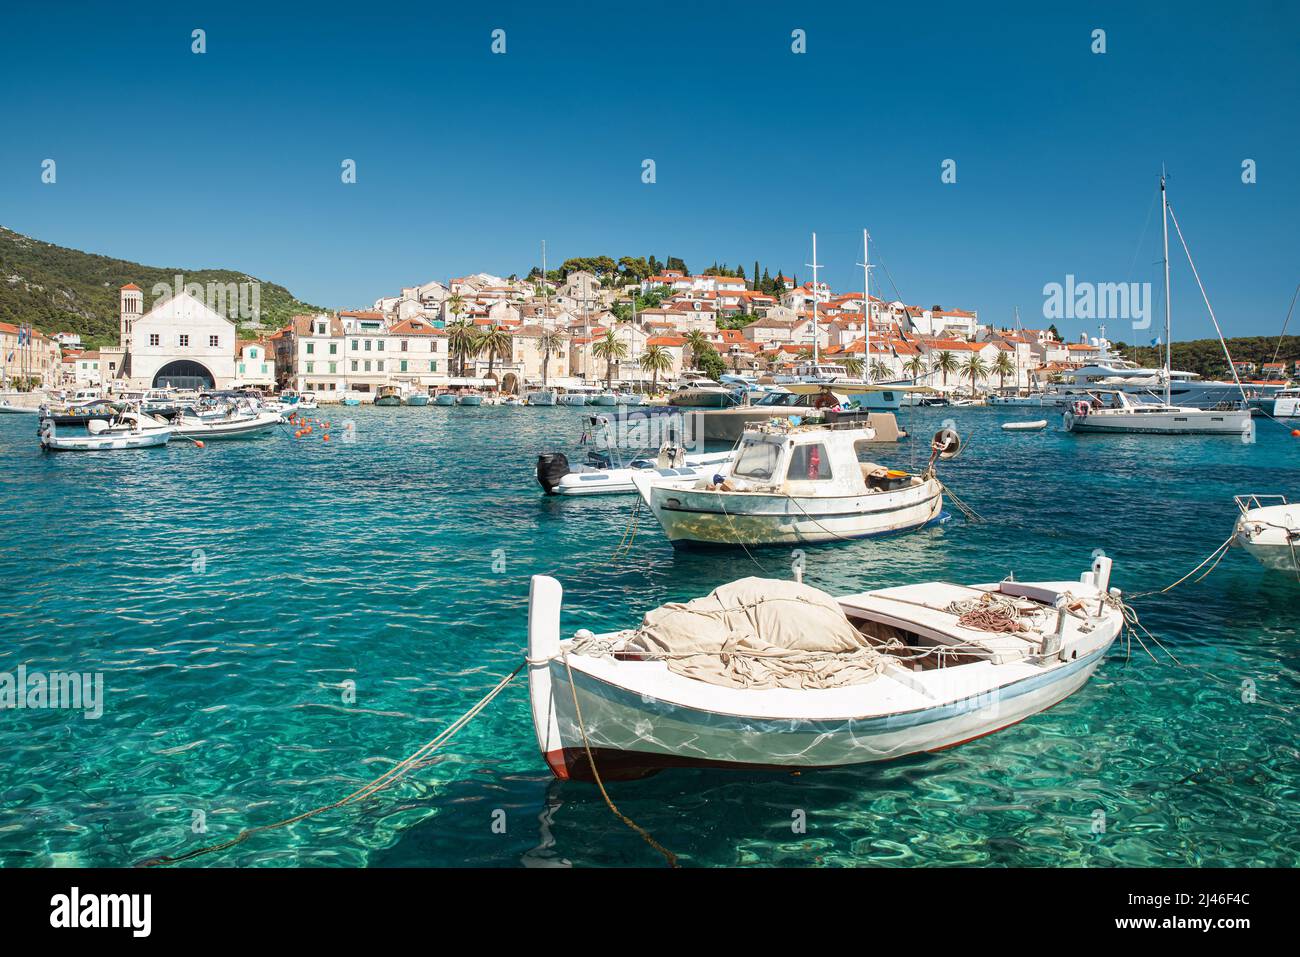 Port avec bateaux dans les eaux turquoise sur l'île de Hvar, Croatie avec la vieille ville sur fond. Station touristique. Destination de vacances d'été Banque D'Images